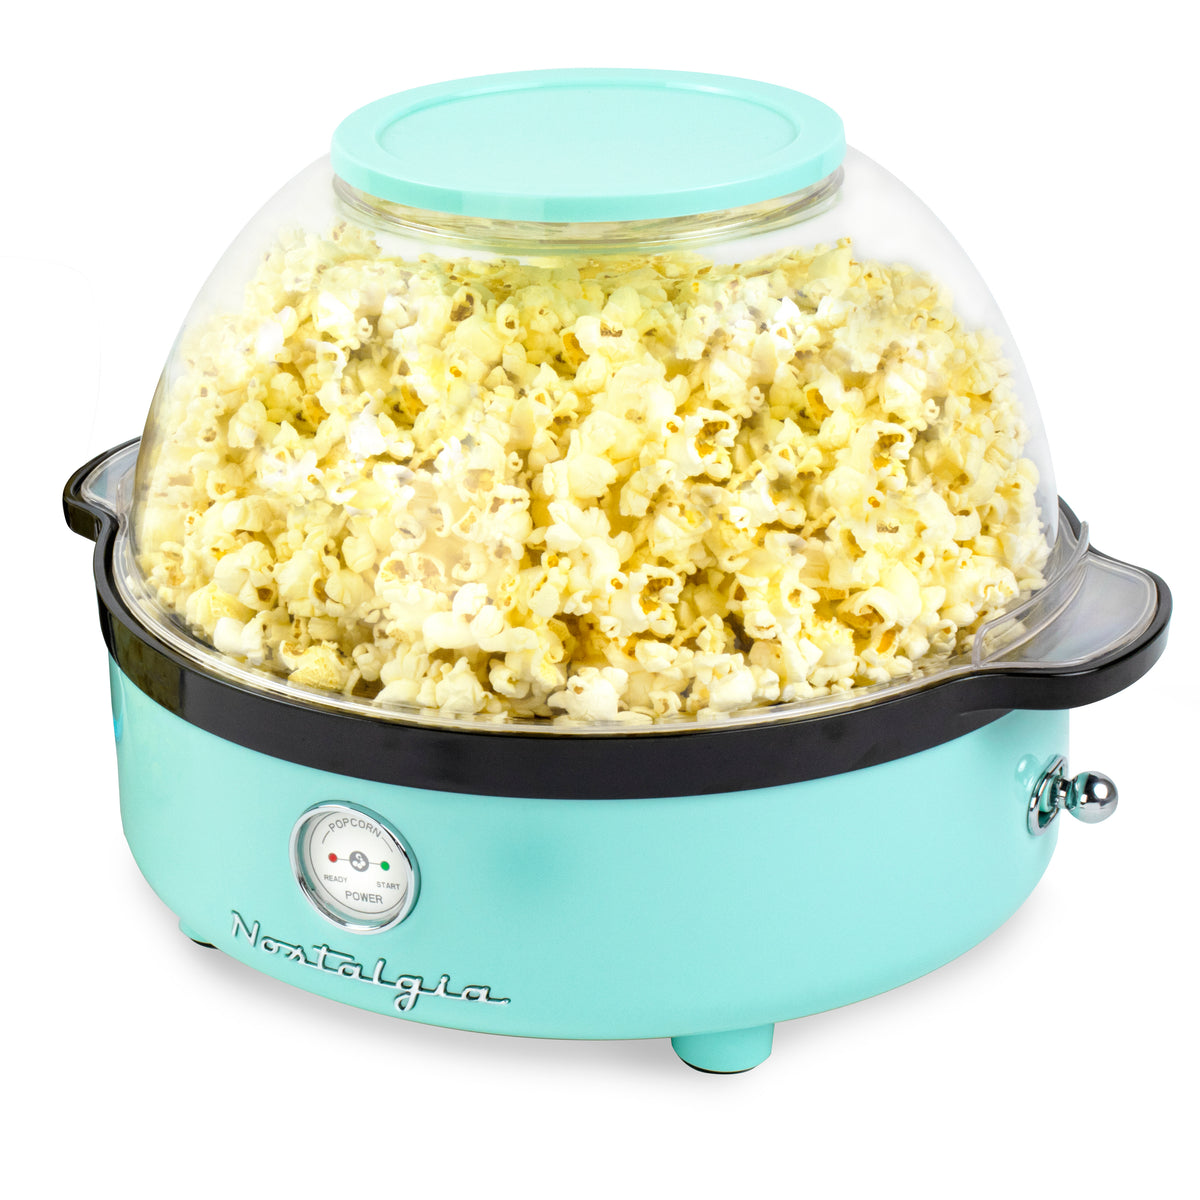 Retro Popcorn Maker - A Delicious Movie Night at Home